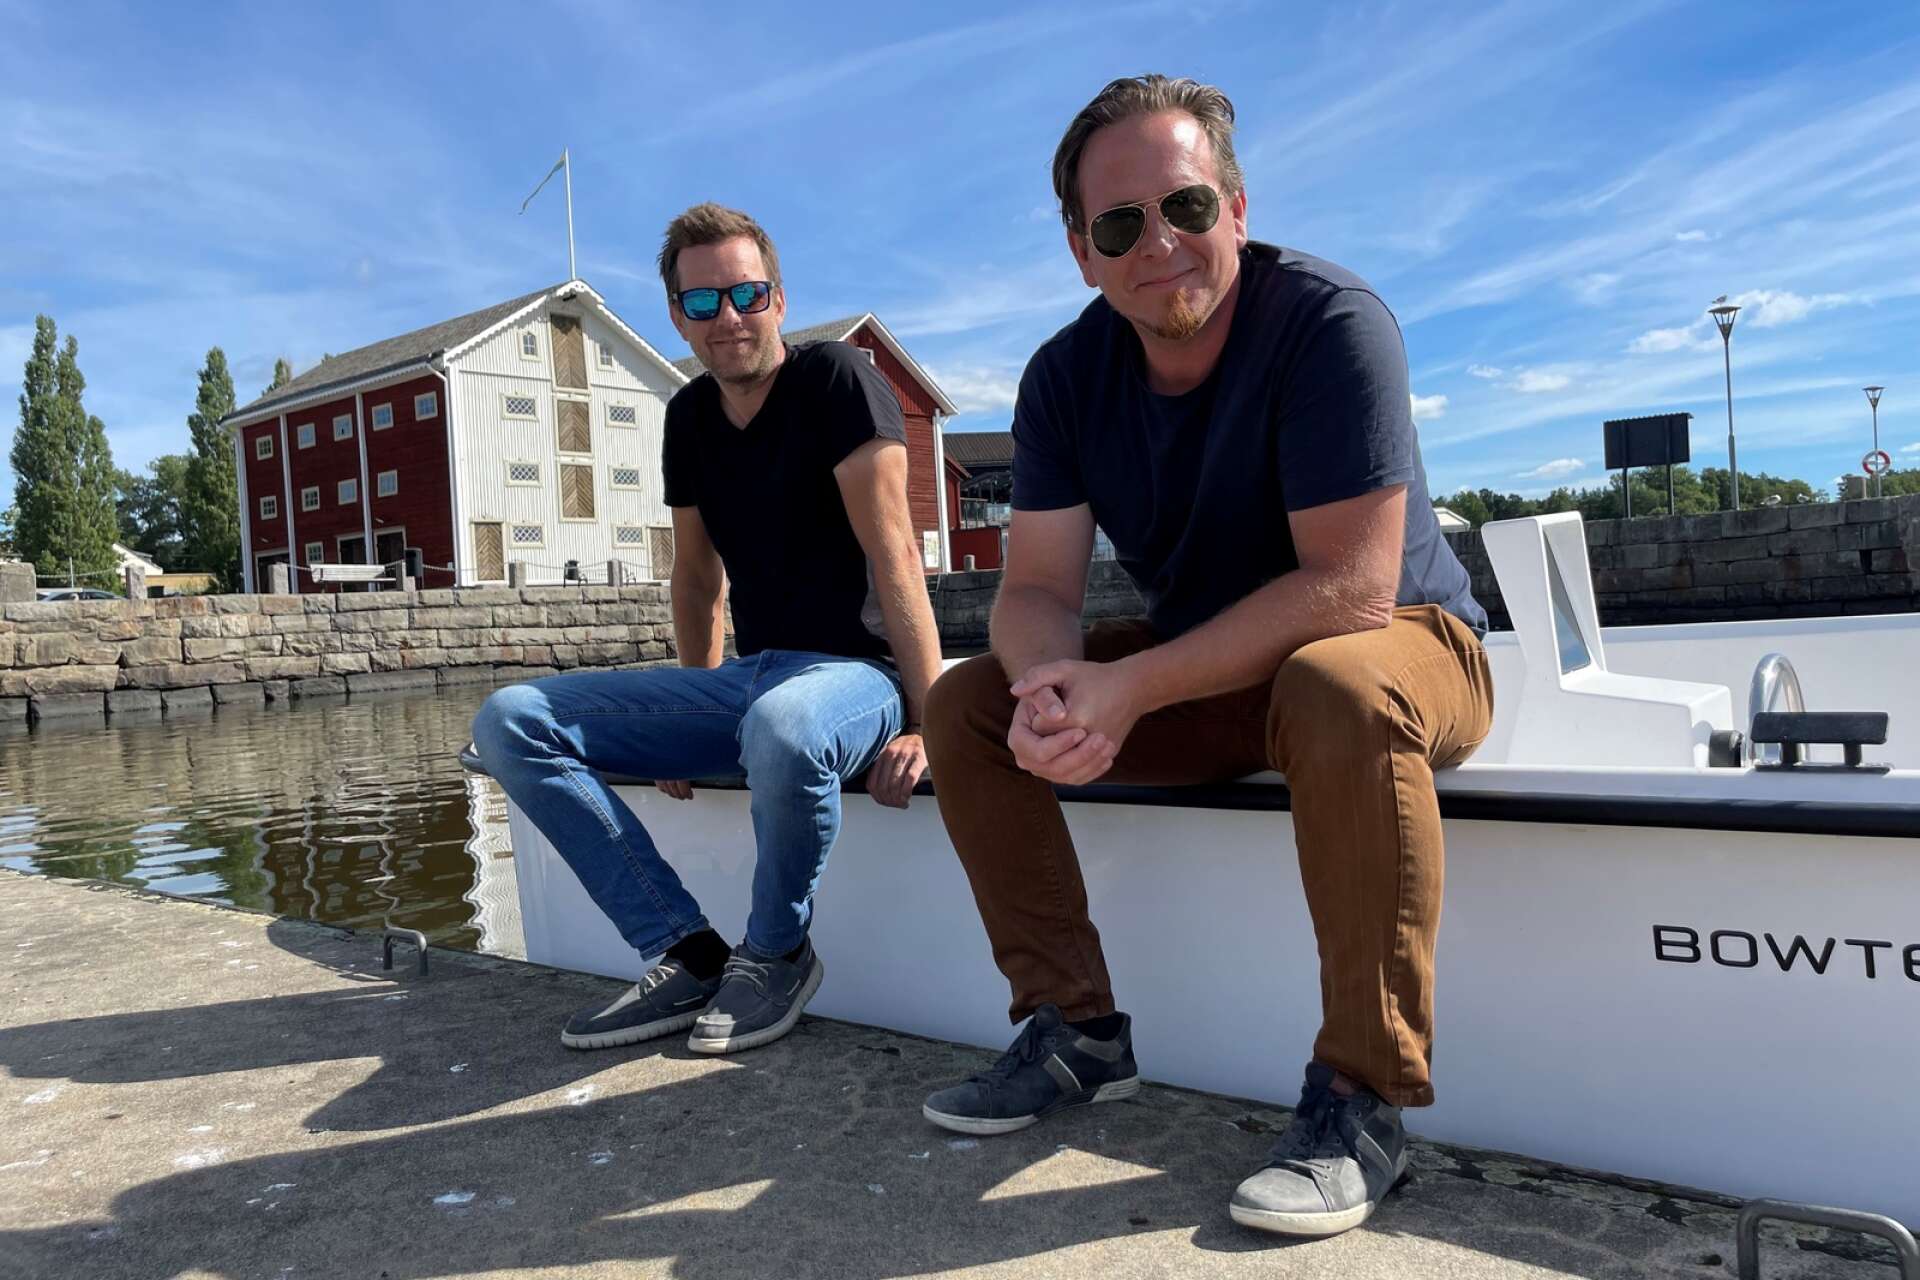 Jonas Ulveseth och Joakim Spetsmark gjorde succé i SVT:s Draknästet. Nu höjer de takten i tillväxtplanen rejält.